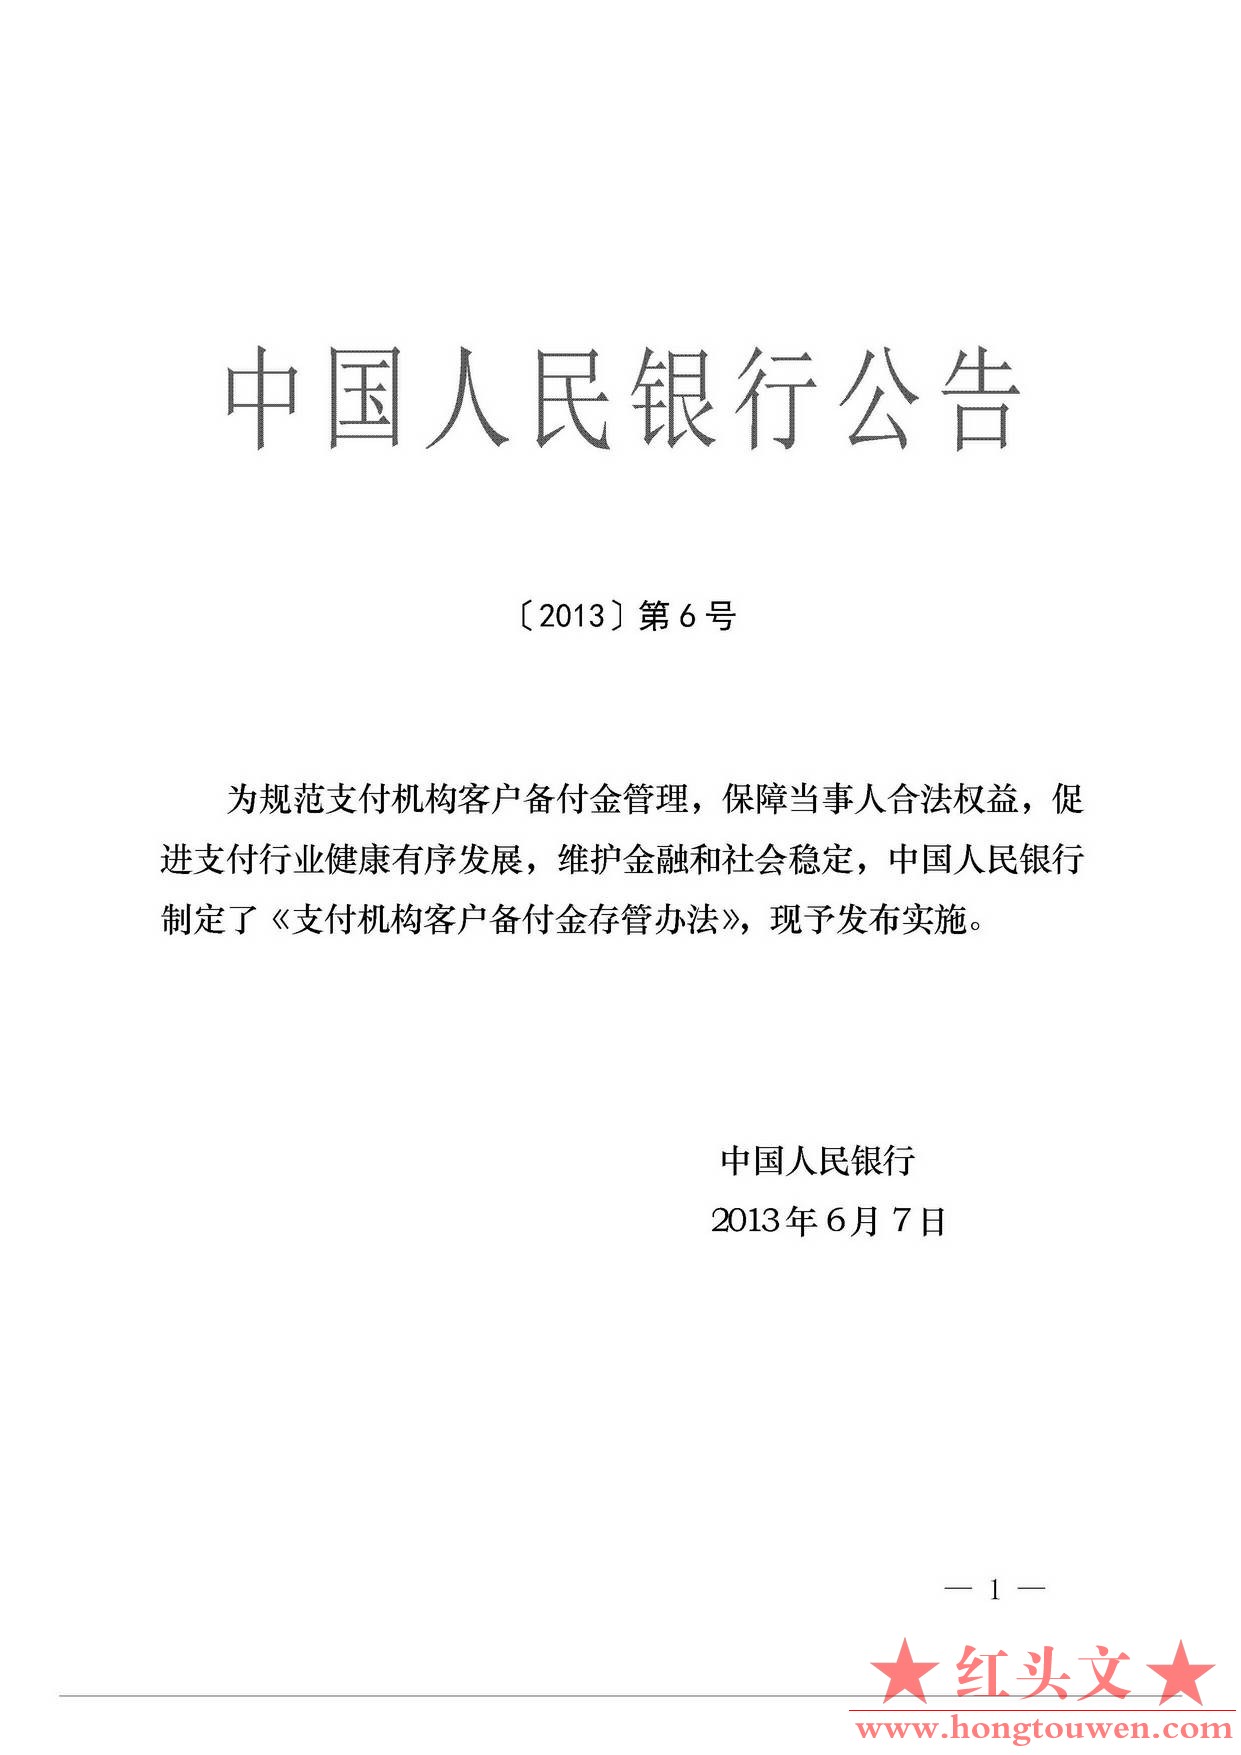 中国人民银行公告[2013]6号-《支付机构客户备付金存管办法》_页面_01.jpg.jpg